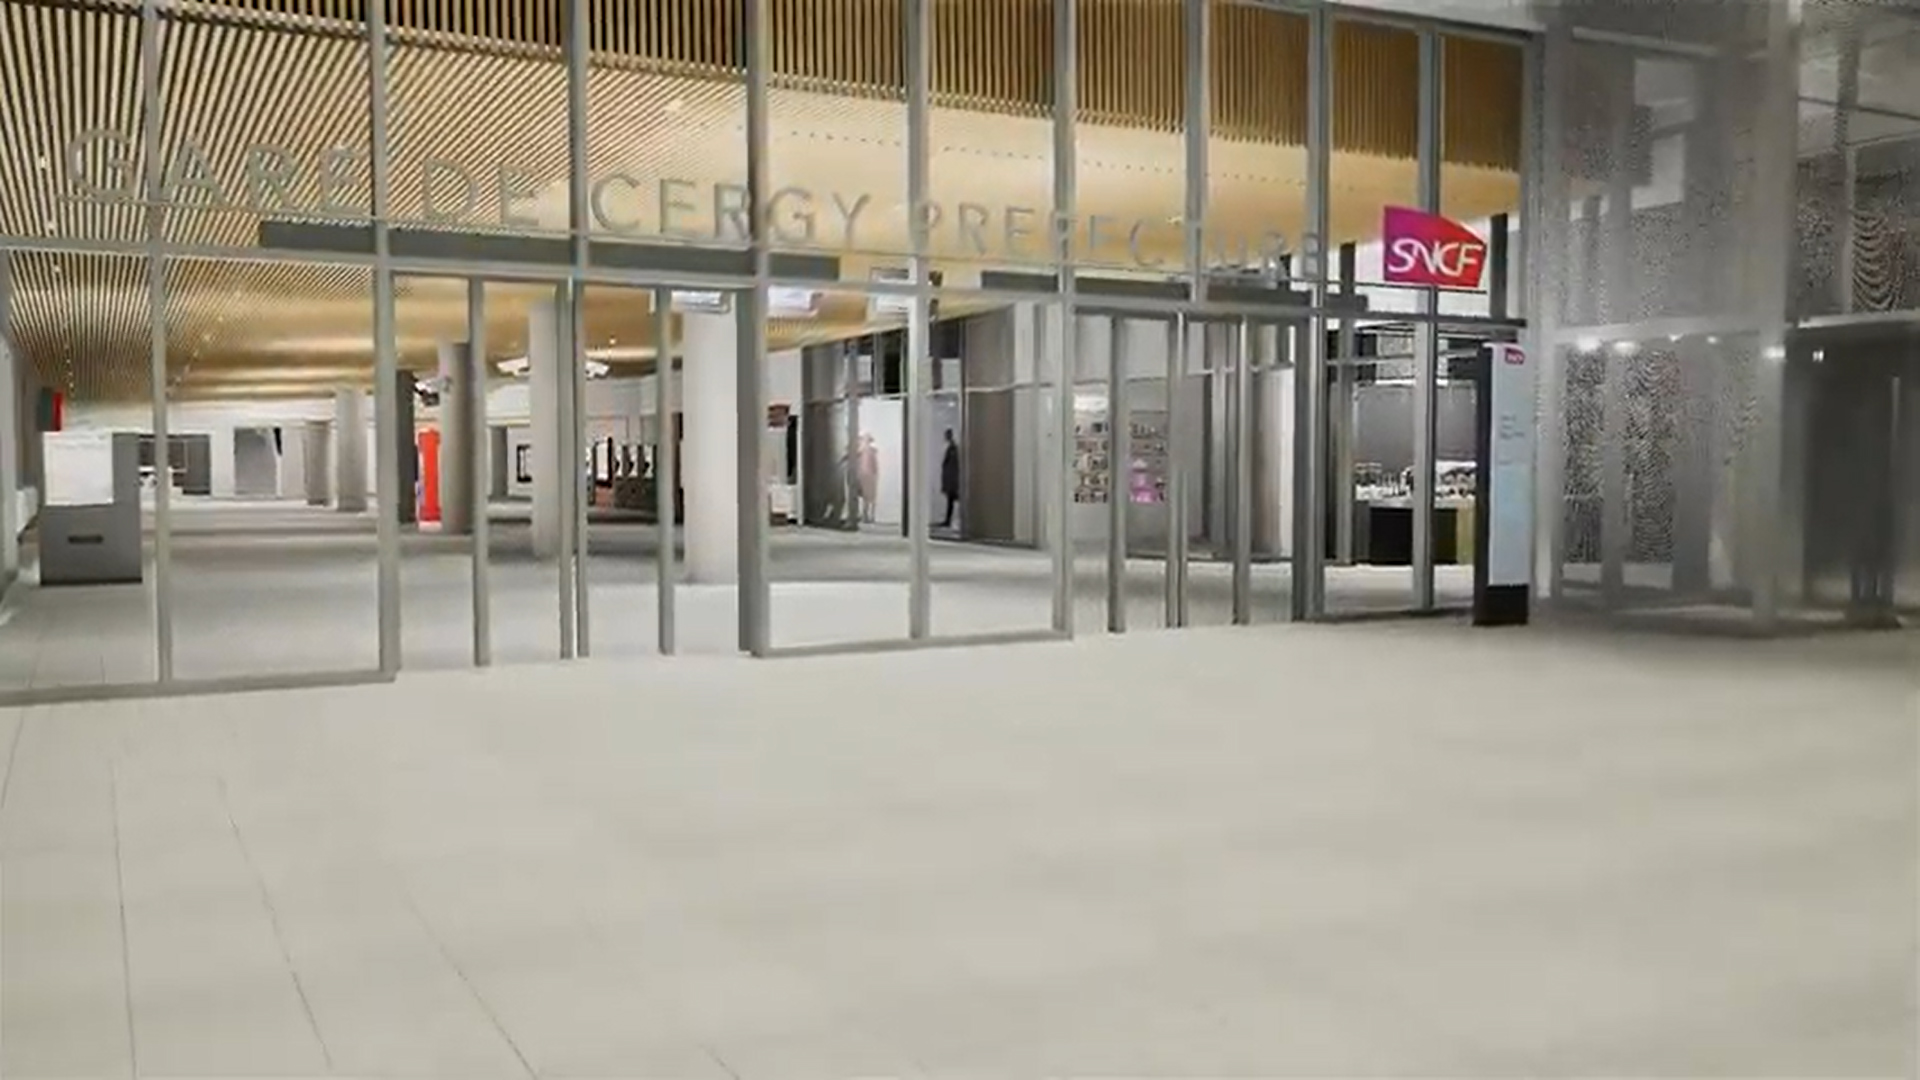 Présentation de l’intérieur de la nouvelle gare Cergy-Préfecture